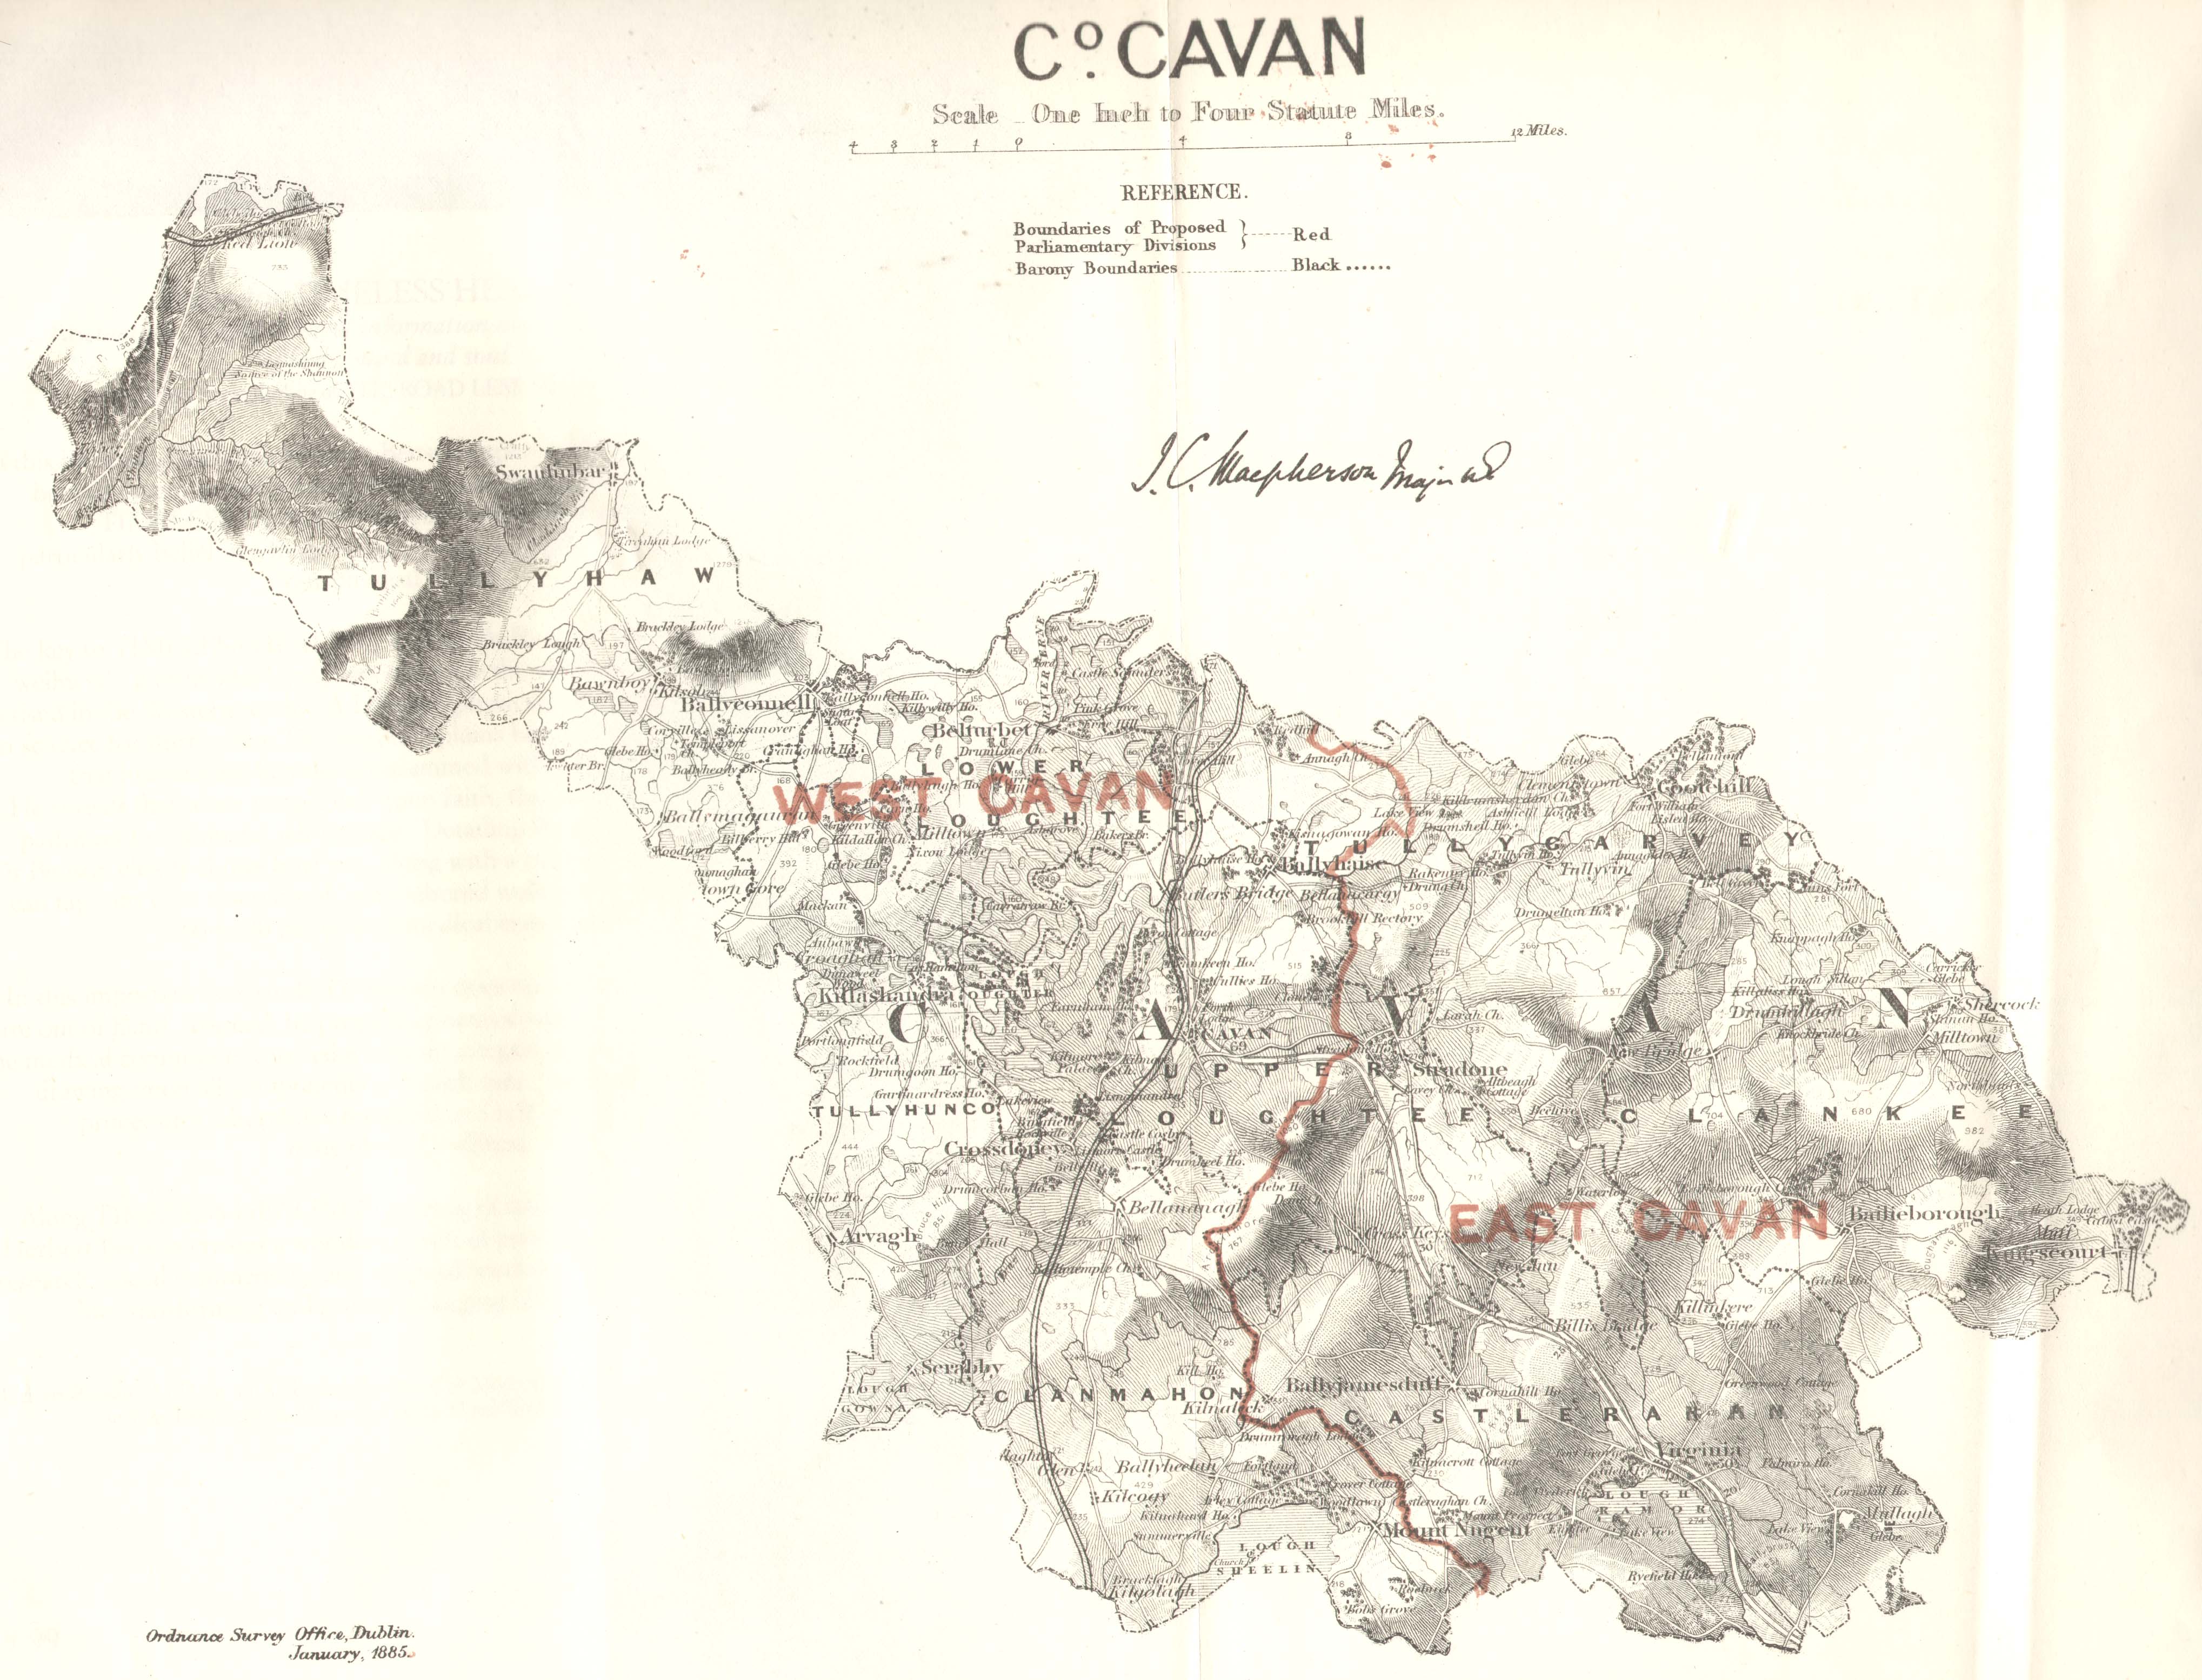 Cavan, published 1885